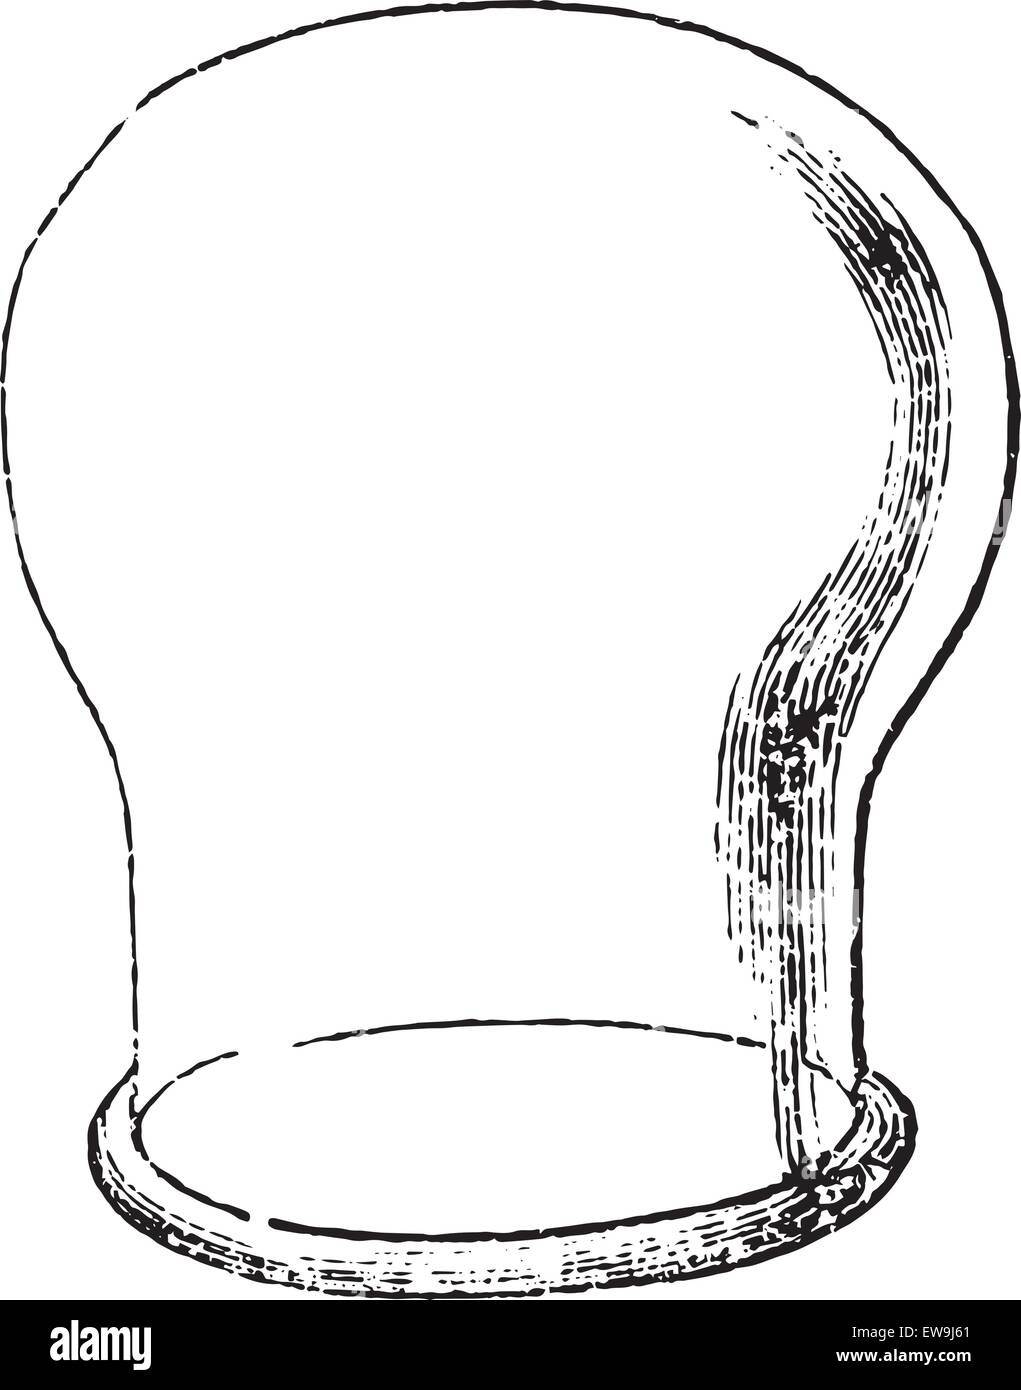 Ventouse ou Sucker, vintage engraved illustration. Dictionnaire de médecine habituelle par le Dr Labarthe - 1885. Illustration de Vecteur